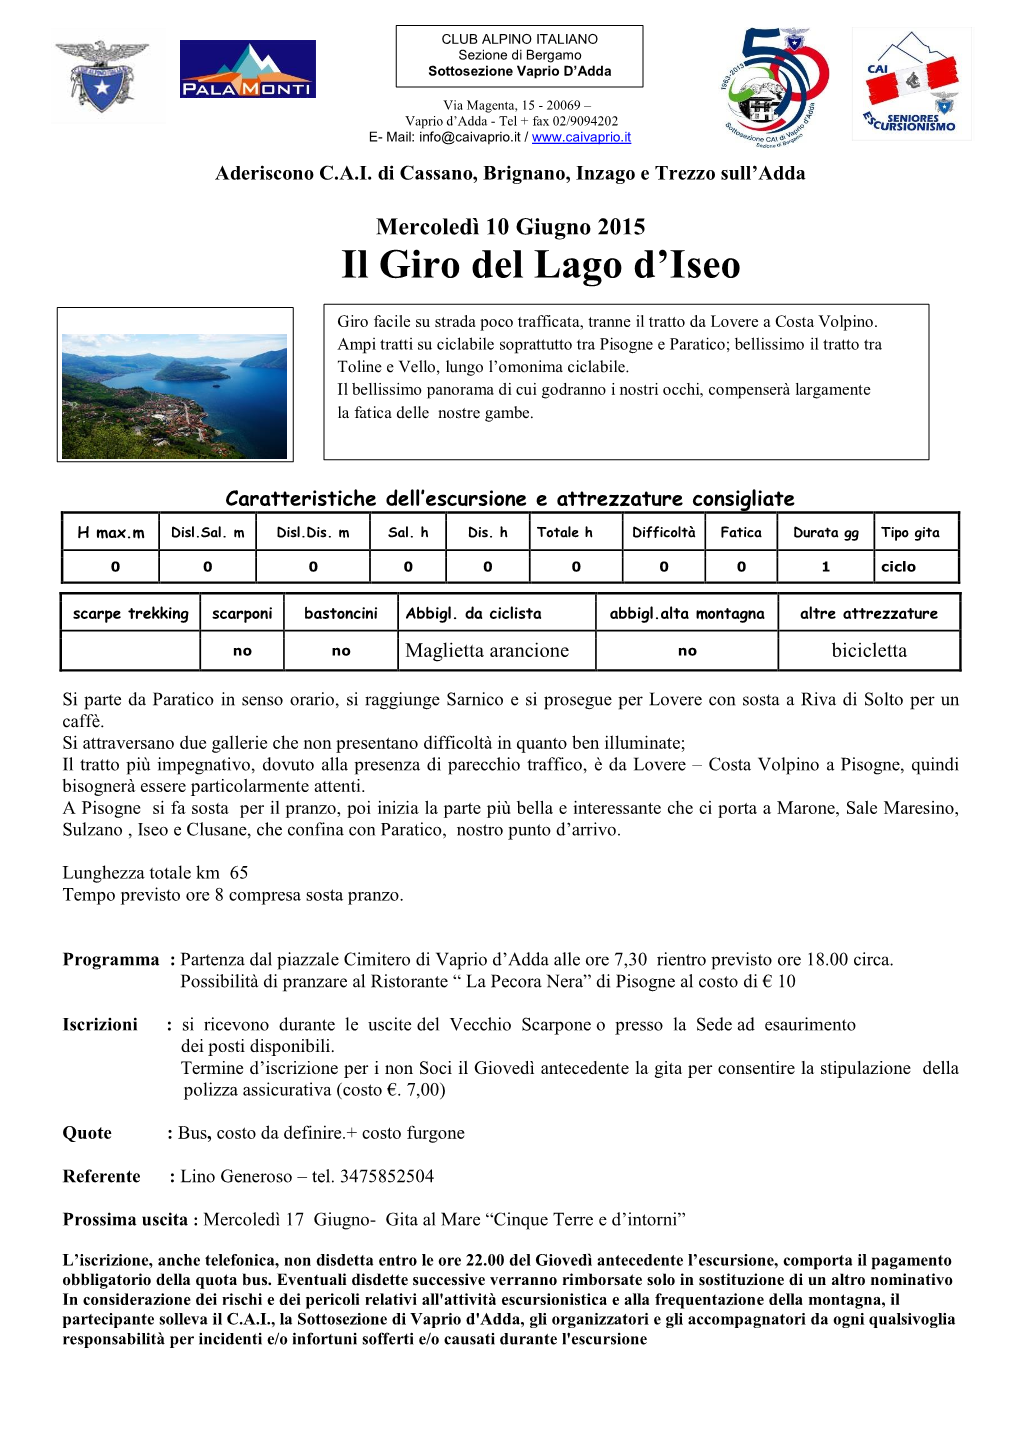 Mercoledì 10 Giugno 2015 Il Giro Del Lago D’Iseo